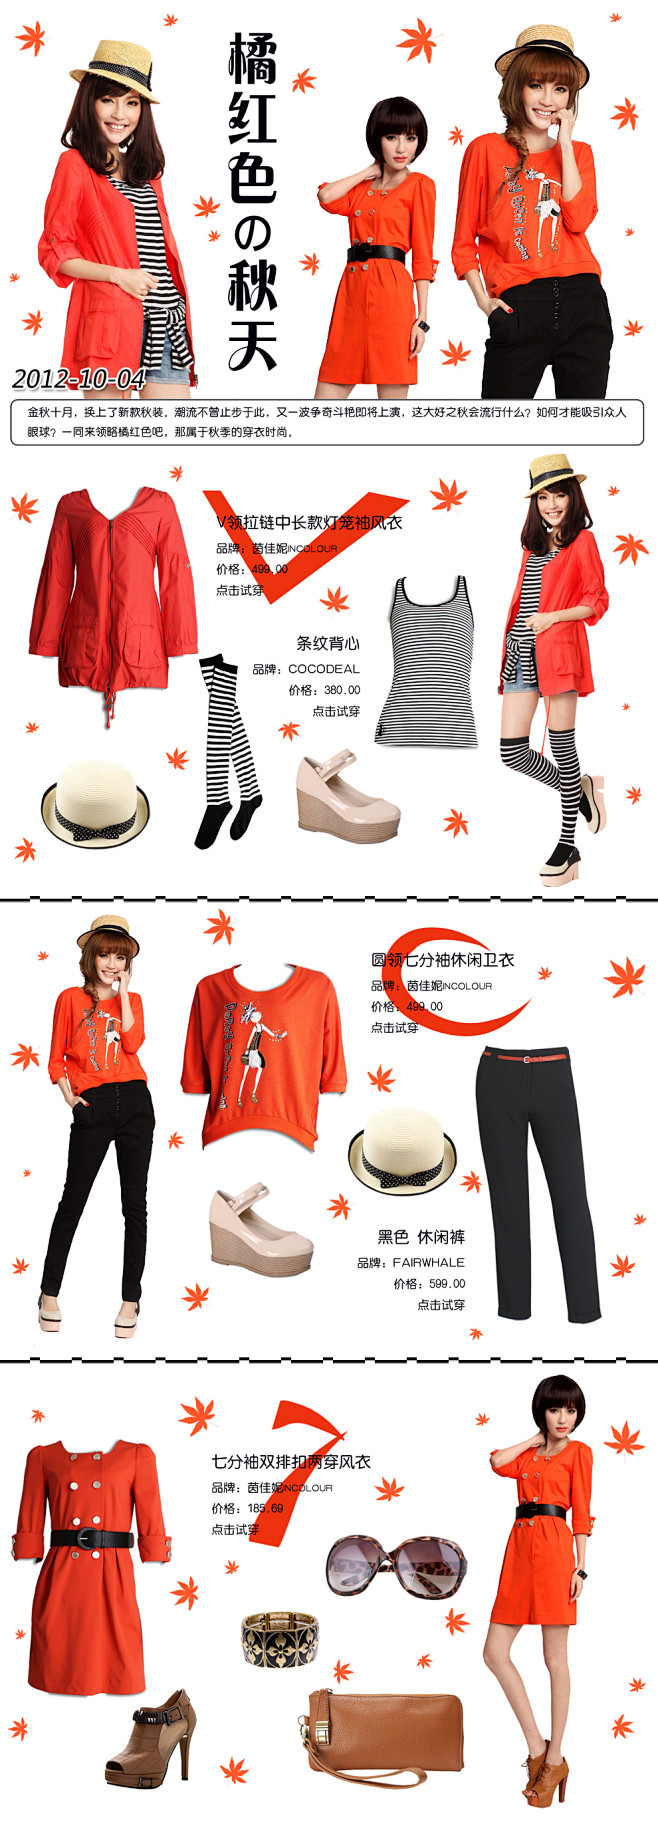 橘红色的秋天-品牌海报-时尚部落